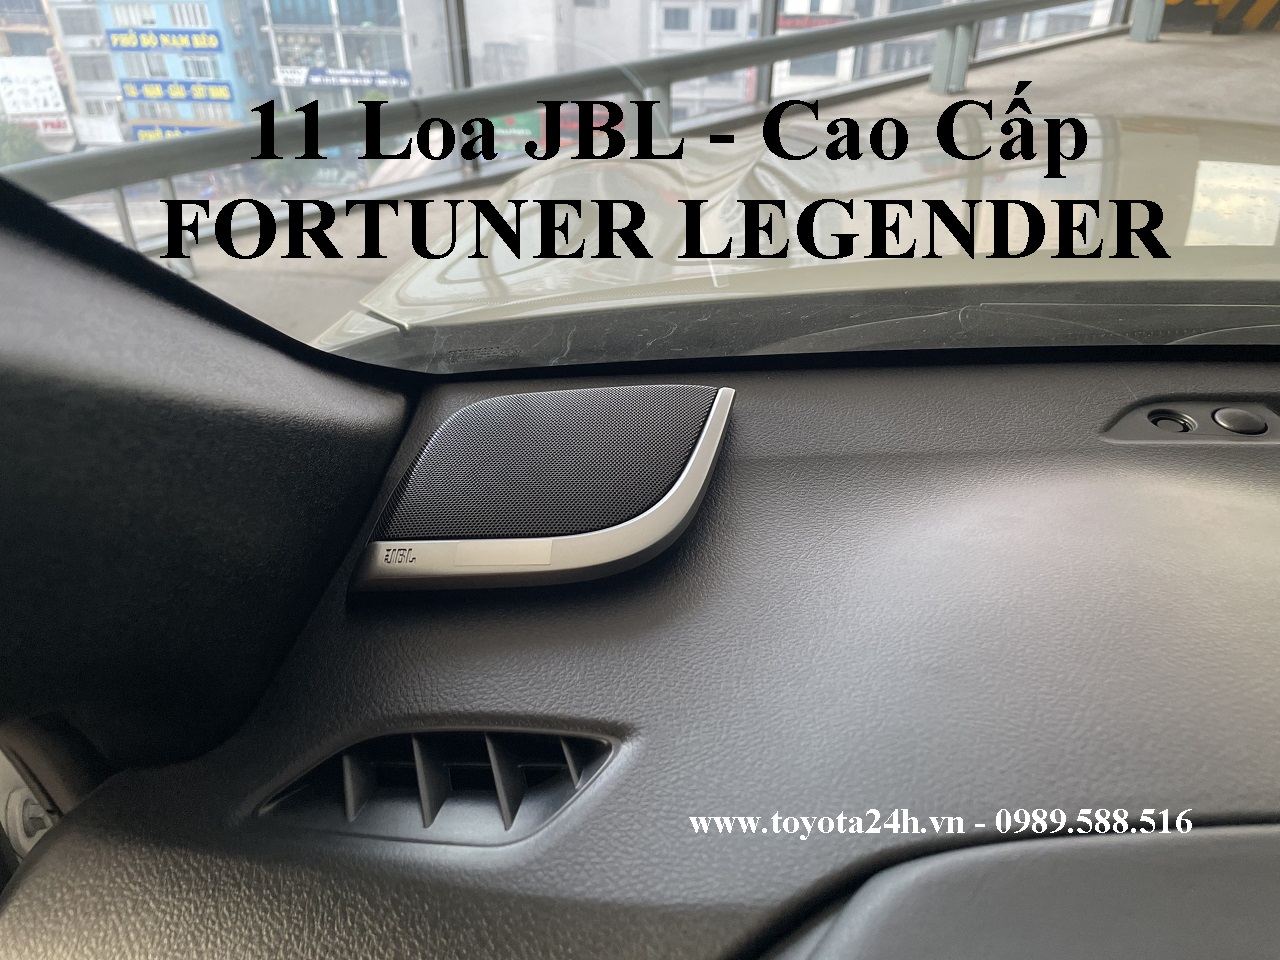 11-loa-jbl-fortuner-legender